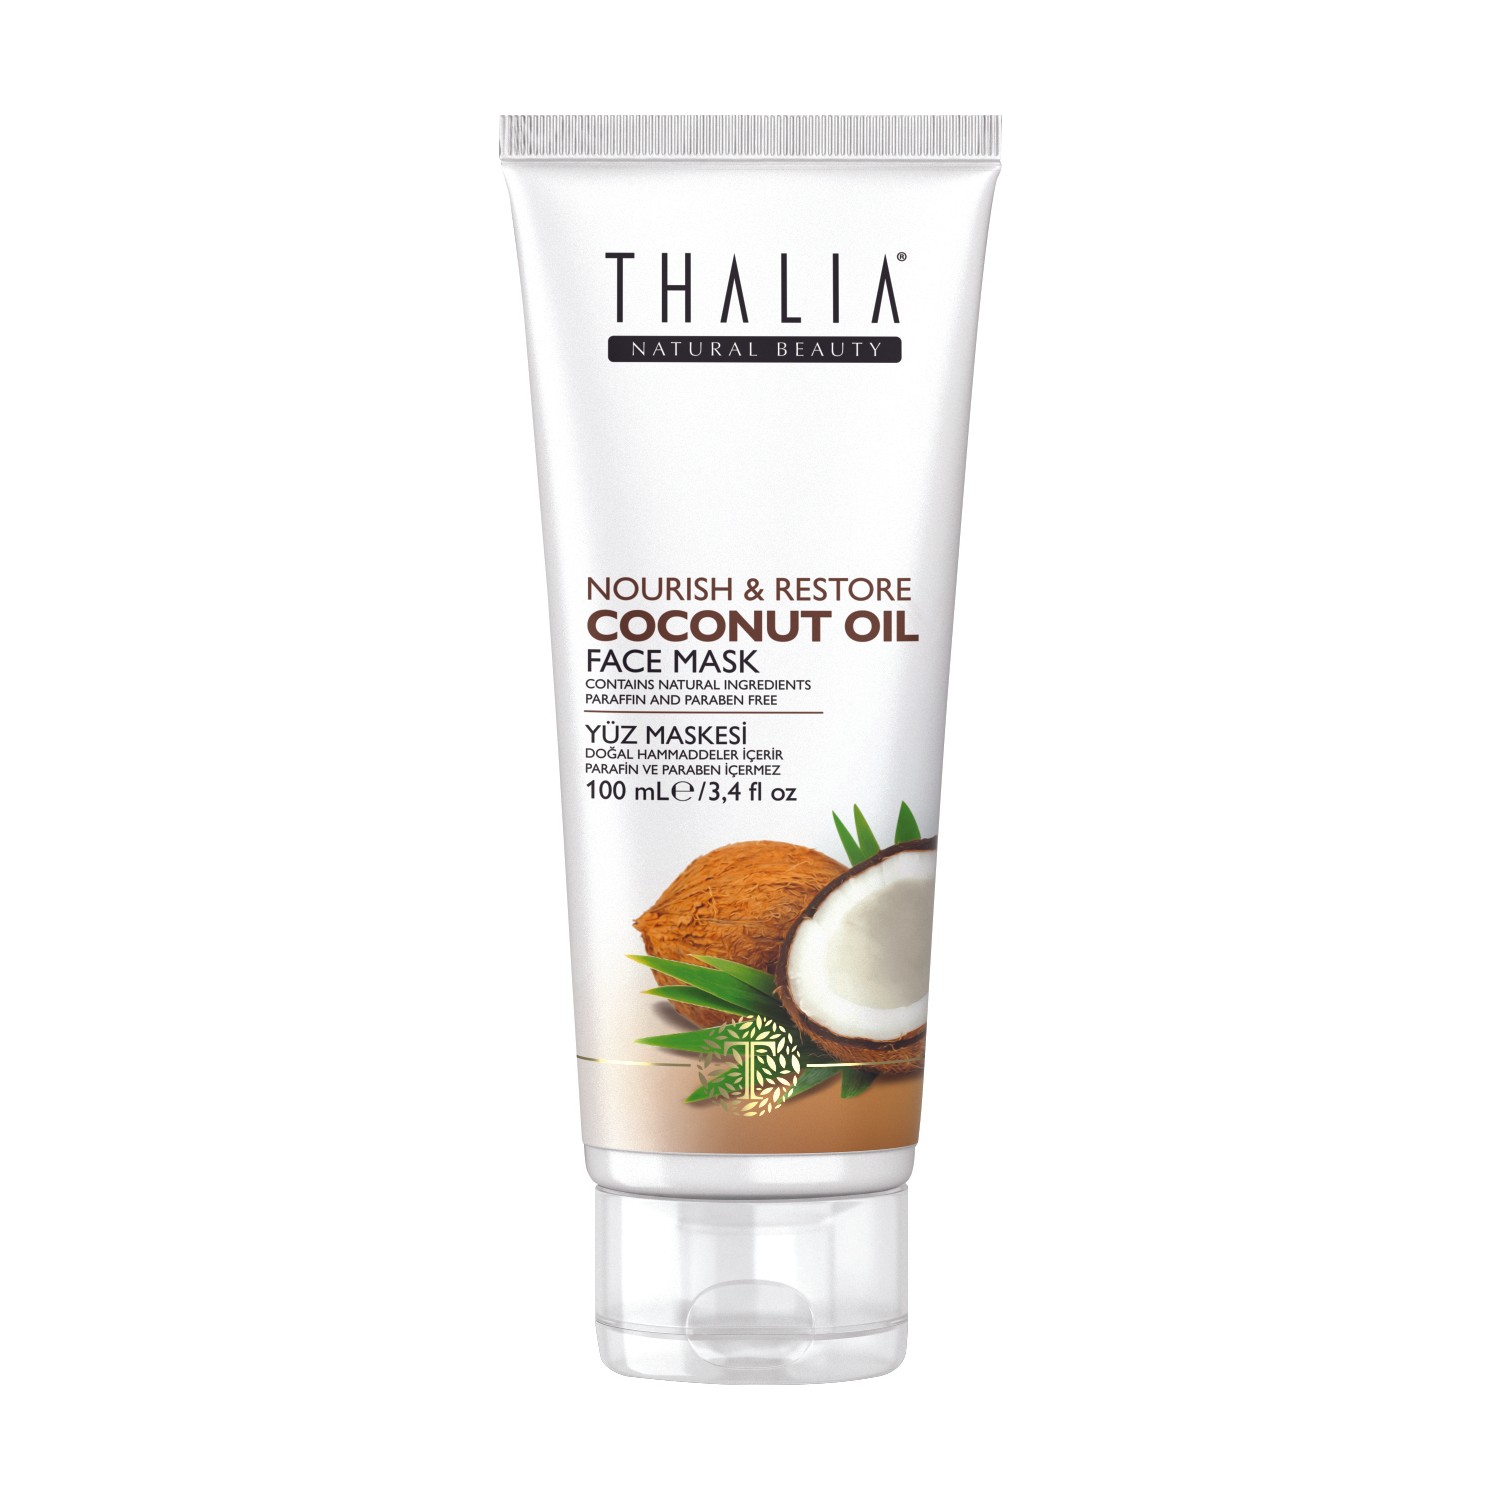 Маска для лица Thalia с кокосовым маслом, 100 мл крем для лица и тела thalia natural beauty argan oil 250 мл